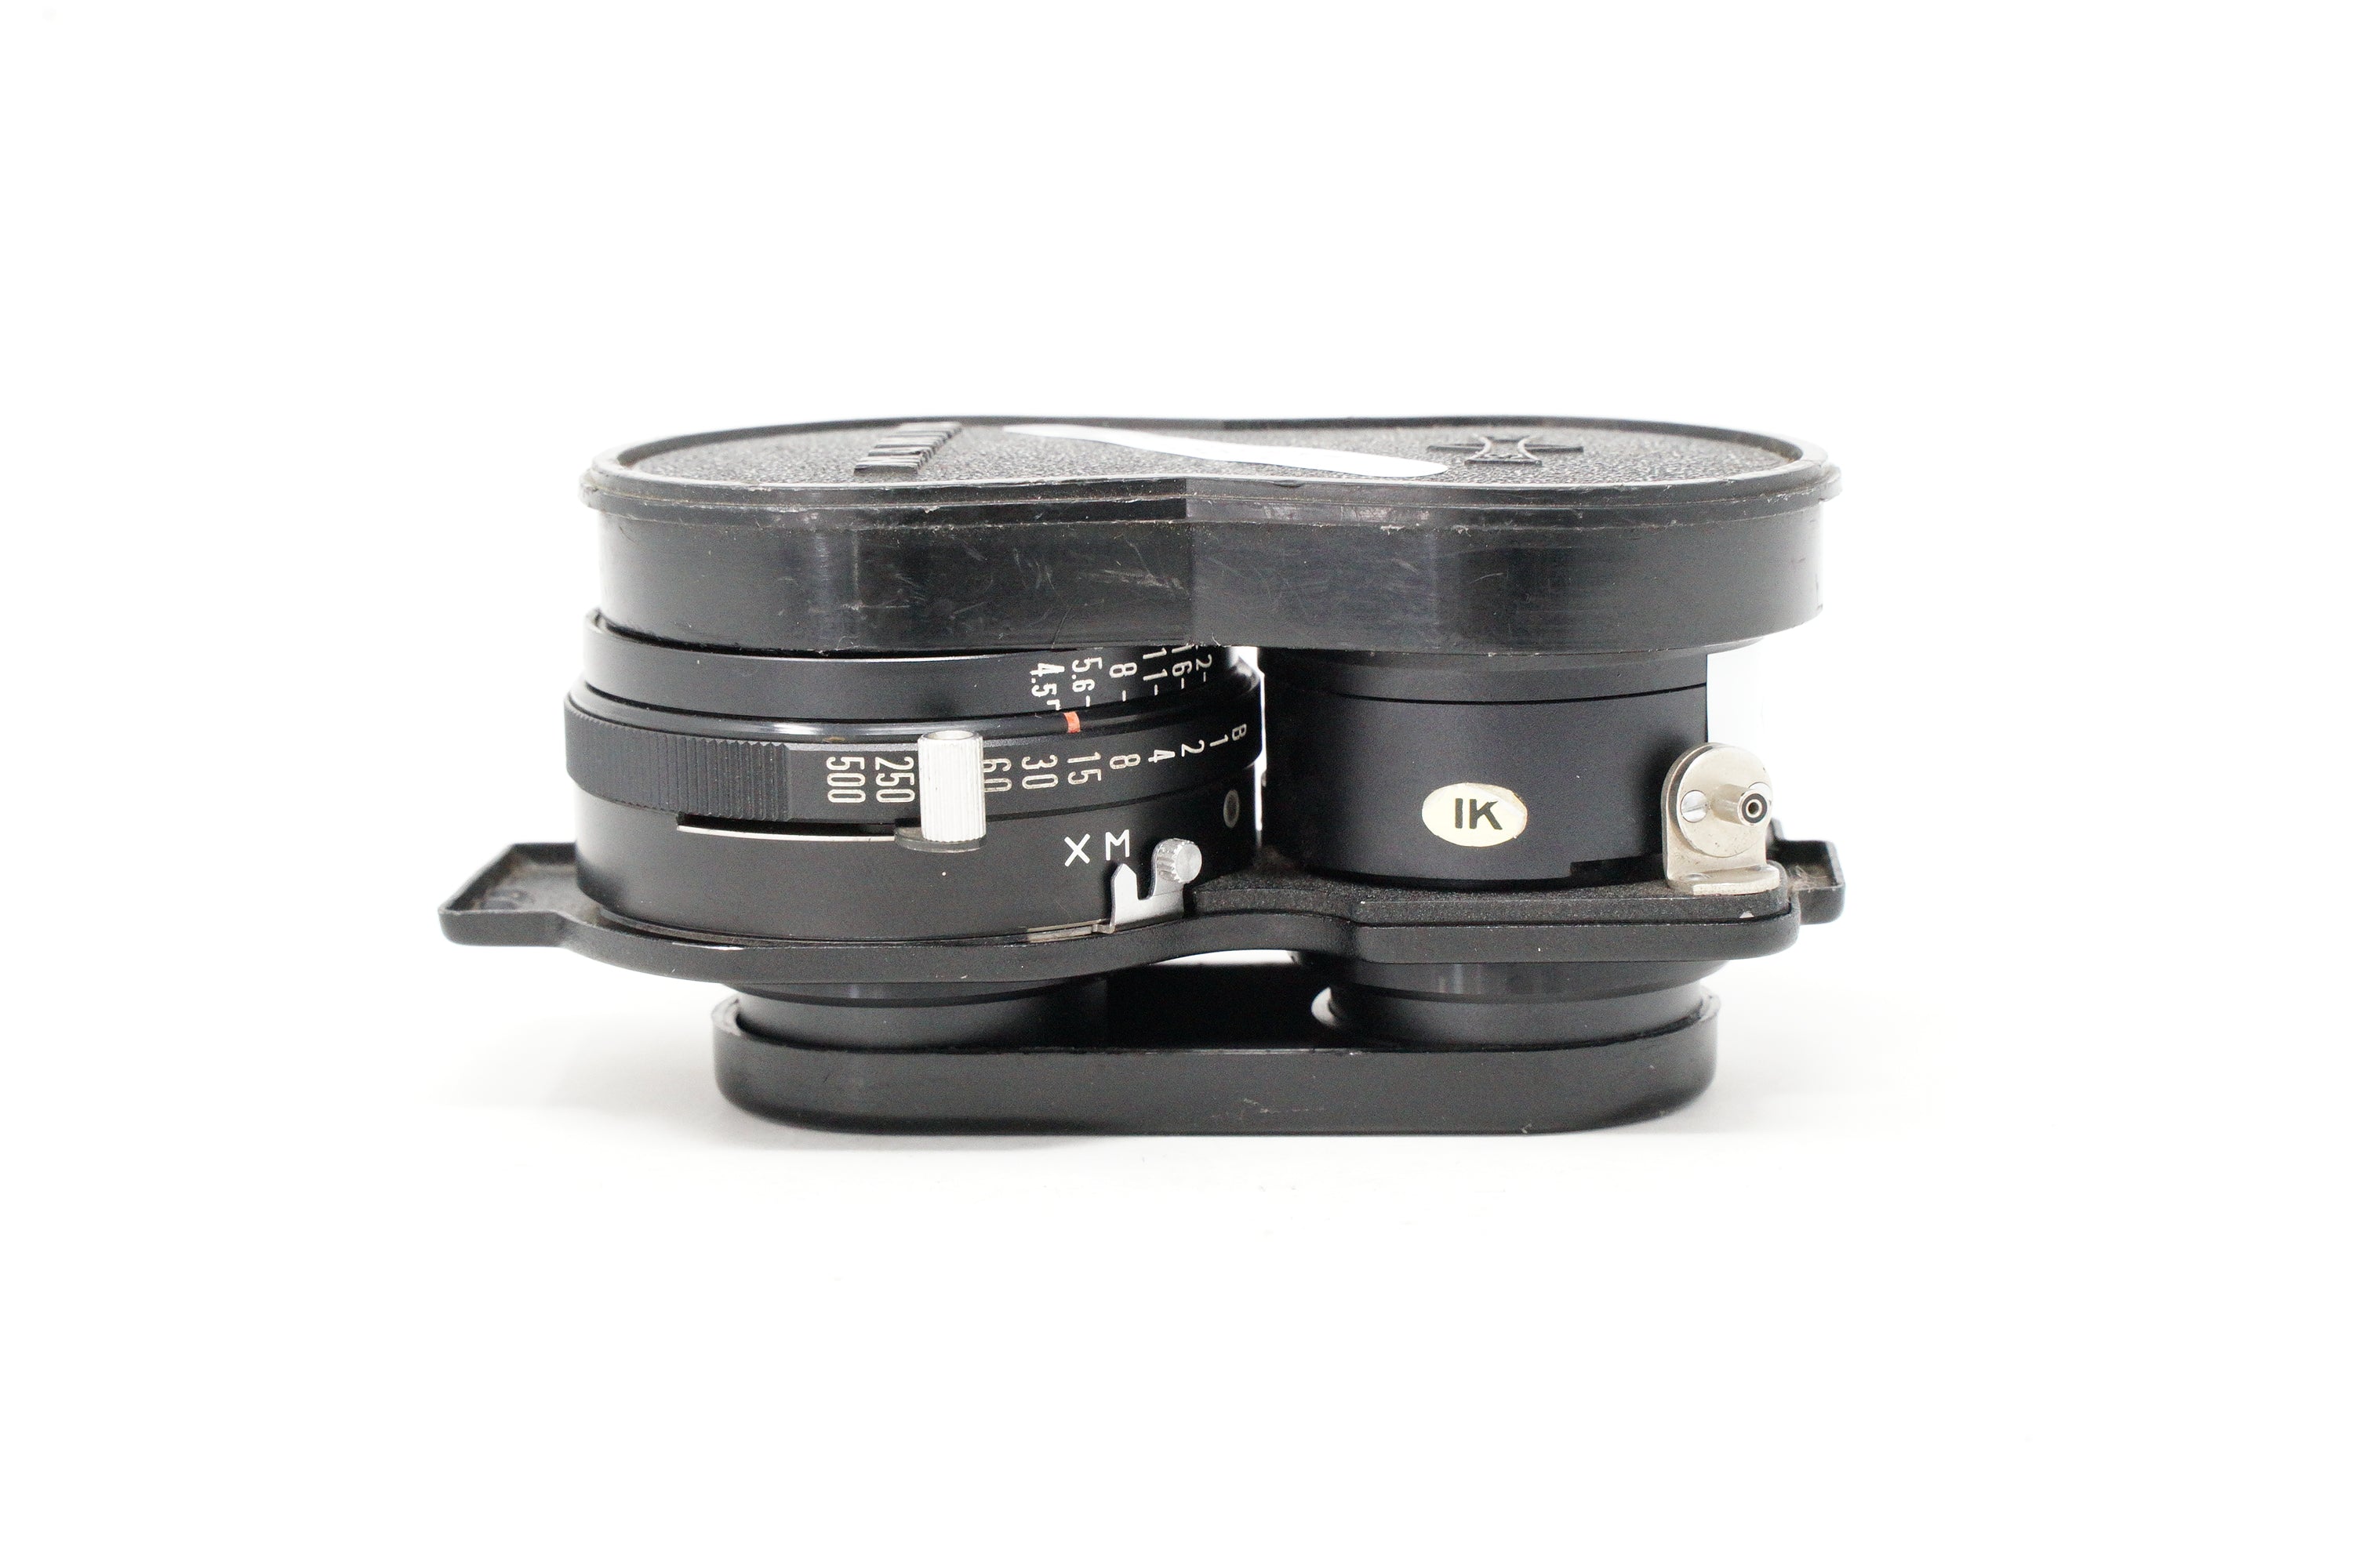 Product Image of Used Mamiya Sekor 55mm F4.5 TLR lens (SH38707)